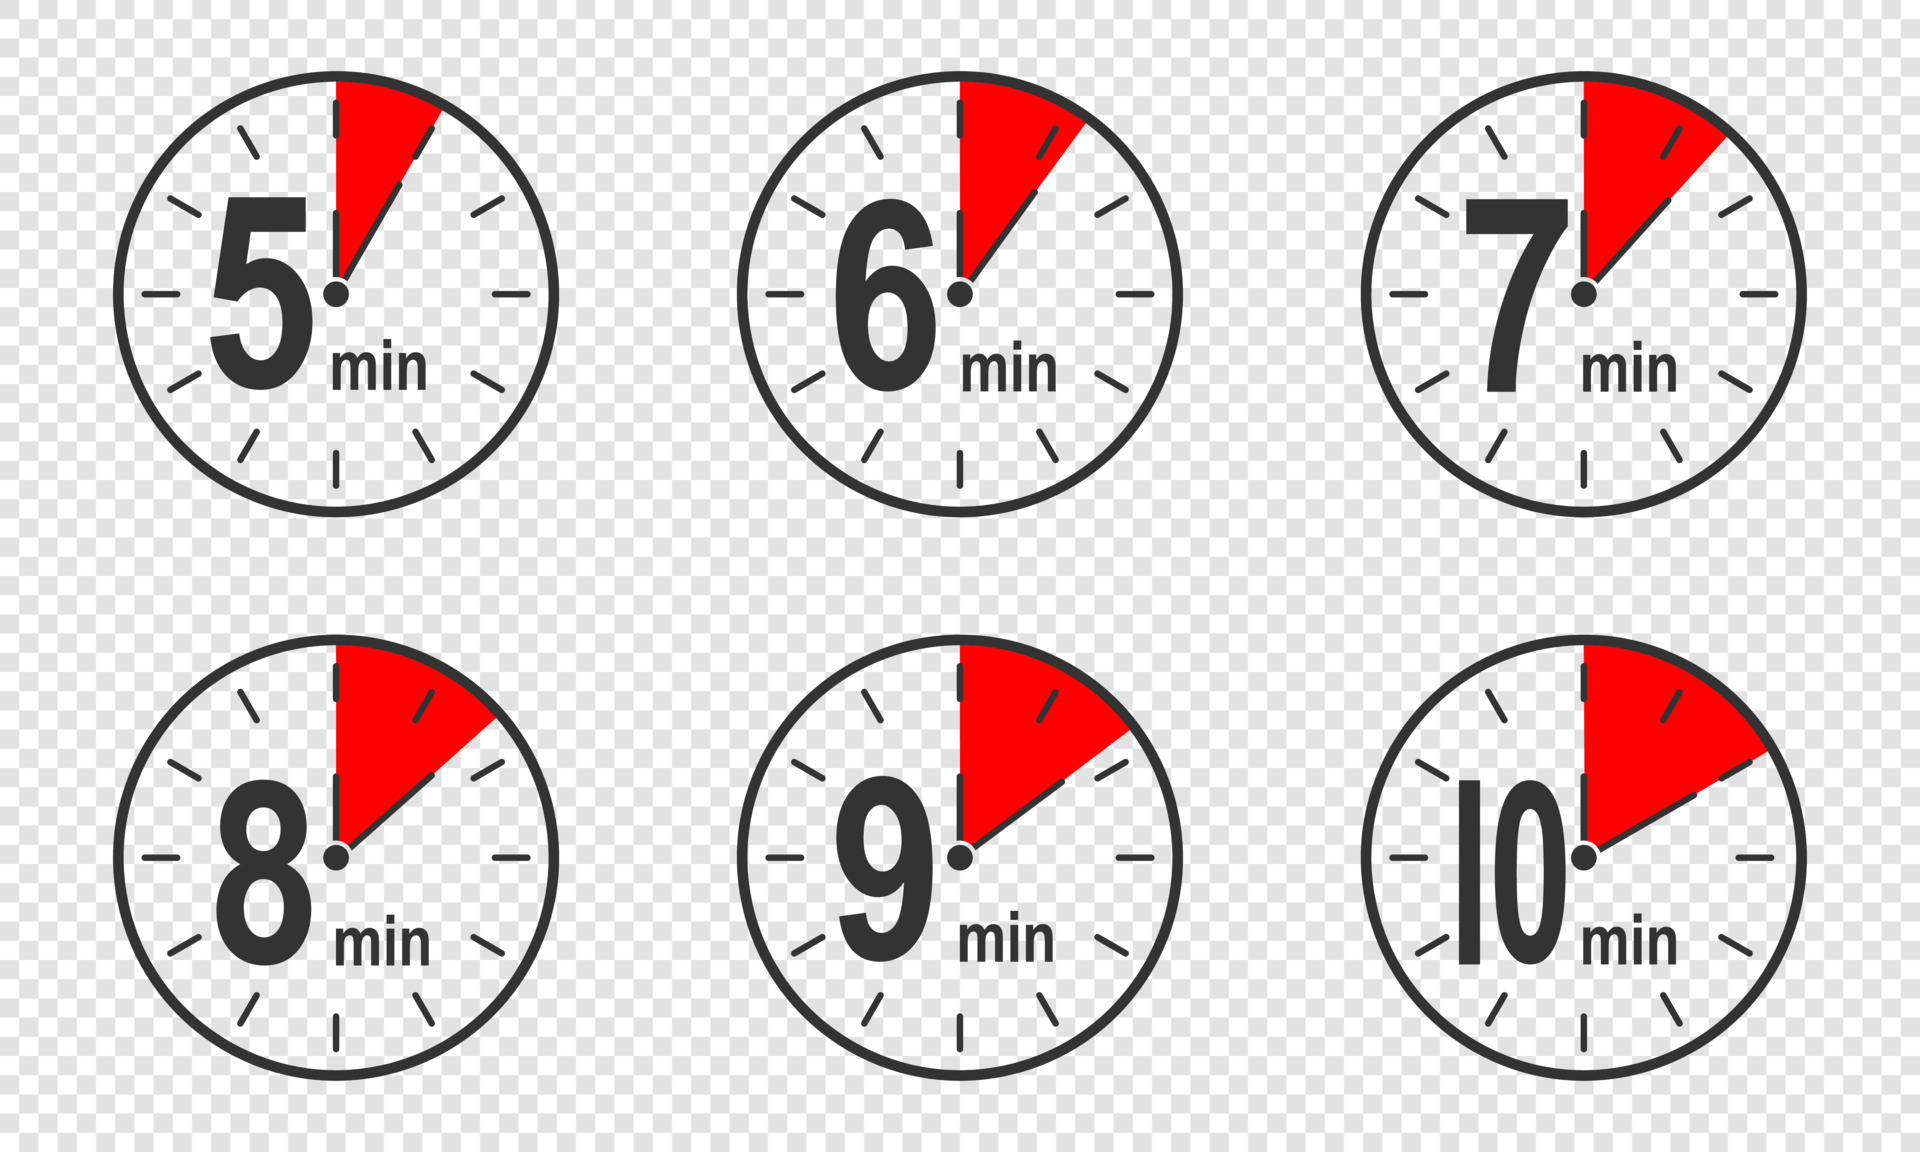 iconos de temporizador con intervalo de tiempo de 5, 6, 7, 8, 9, 10 minutos.  reloj de cuenta regresiva o símbolos de cronómetro. elementos infográficos  para cocinar instrucciones de preparación 15601790 Vector en Vecteezy